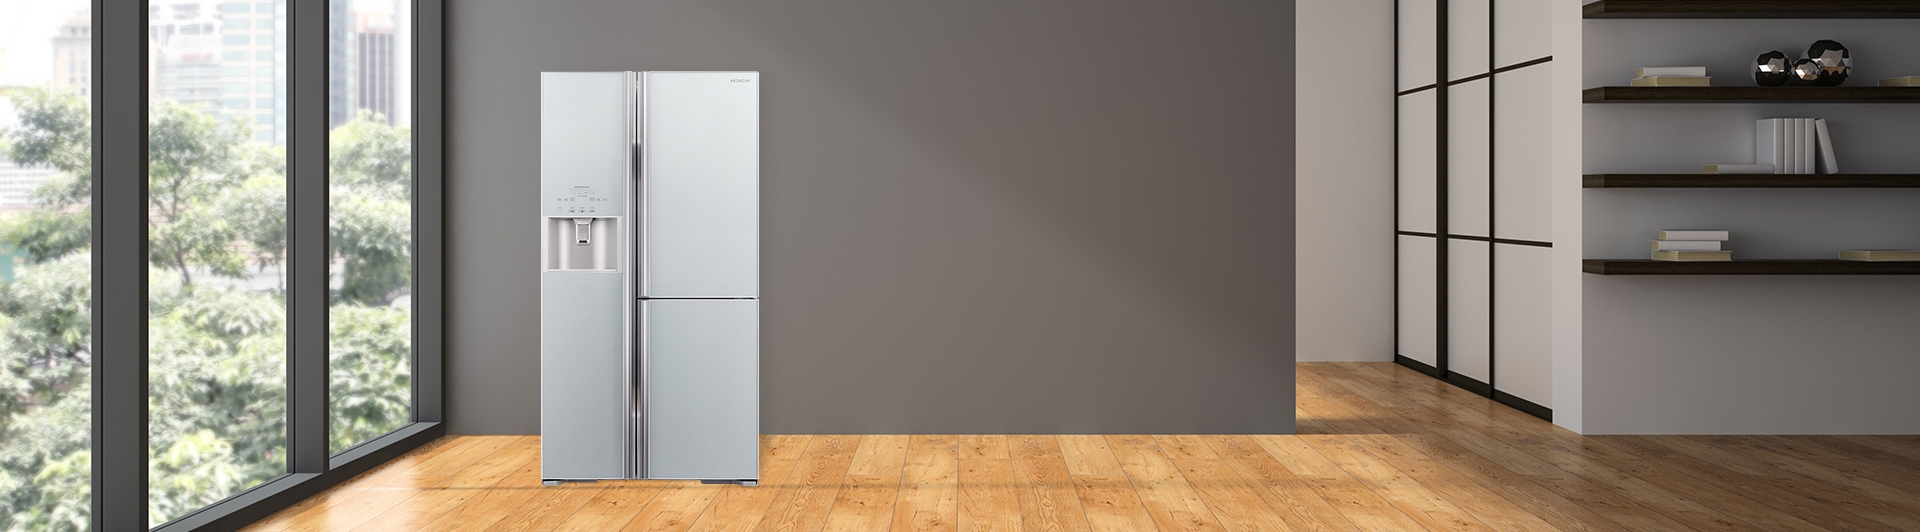 Tủ lạnh Hitachi Inverter 584 lít R-FM800GPGV2 (GS)